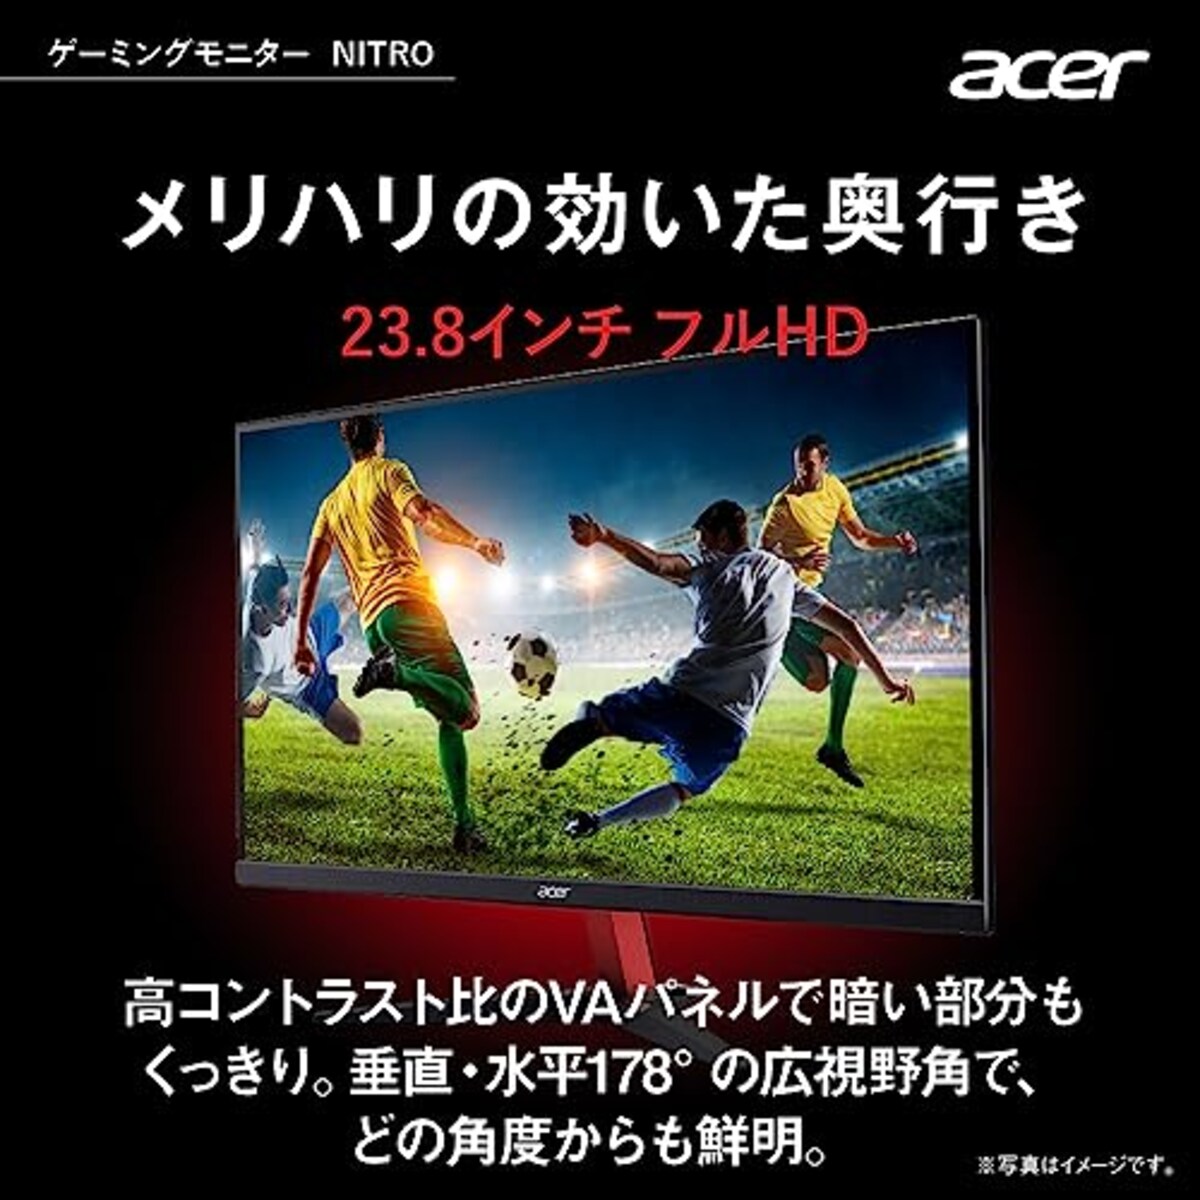  日本エイサー 【Amazon.co.jp限定】Acer ゲーミングモニター Nitro KG242YS3bmiipx 23.8インチ VA 非光沢 フルHD 180Hz 1ms(VRB) HDMI 2.0 DisplayPort VESAマウント対応 スピーカー内蔵 ヘッドホン端子 AMD FreeSync Premium画像3 